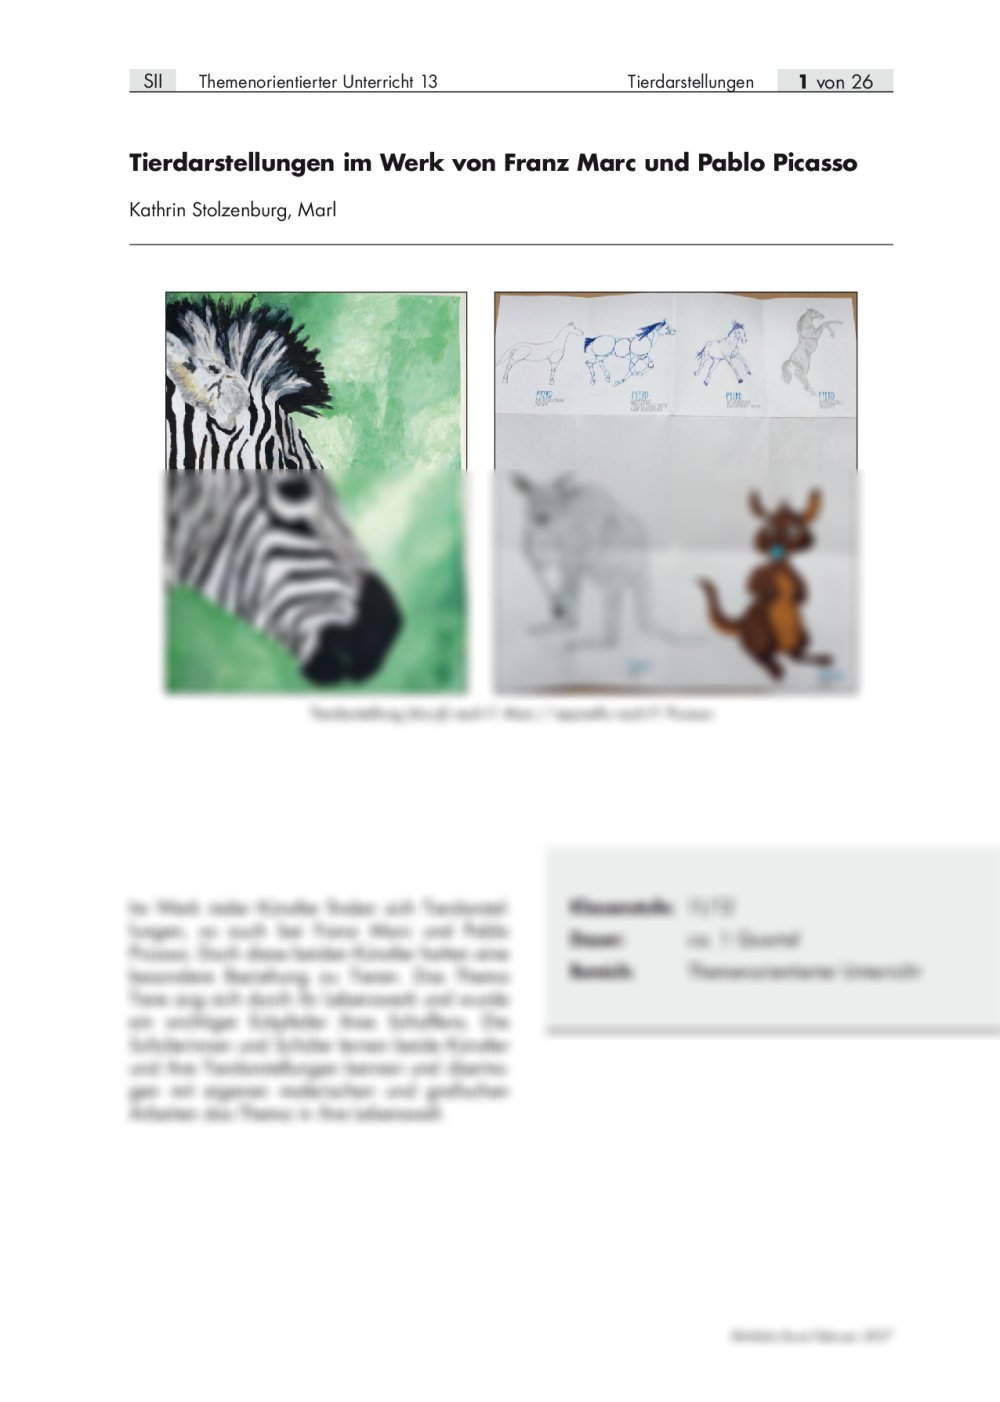 Tierdarstellungen im Werk von Franz Marc und Pablo Picasso - Seite 1